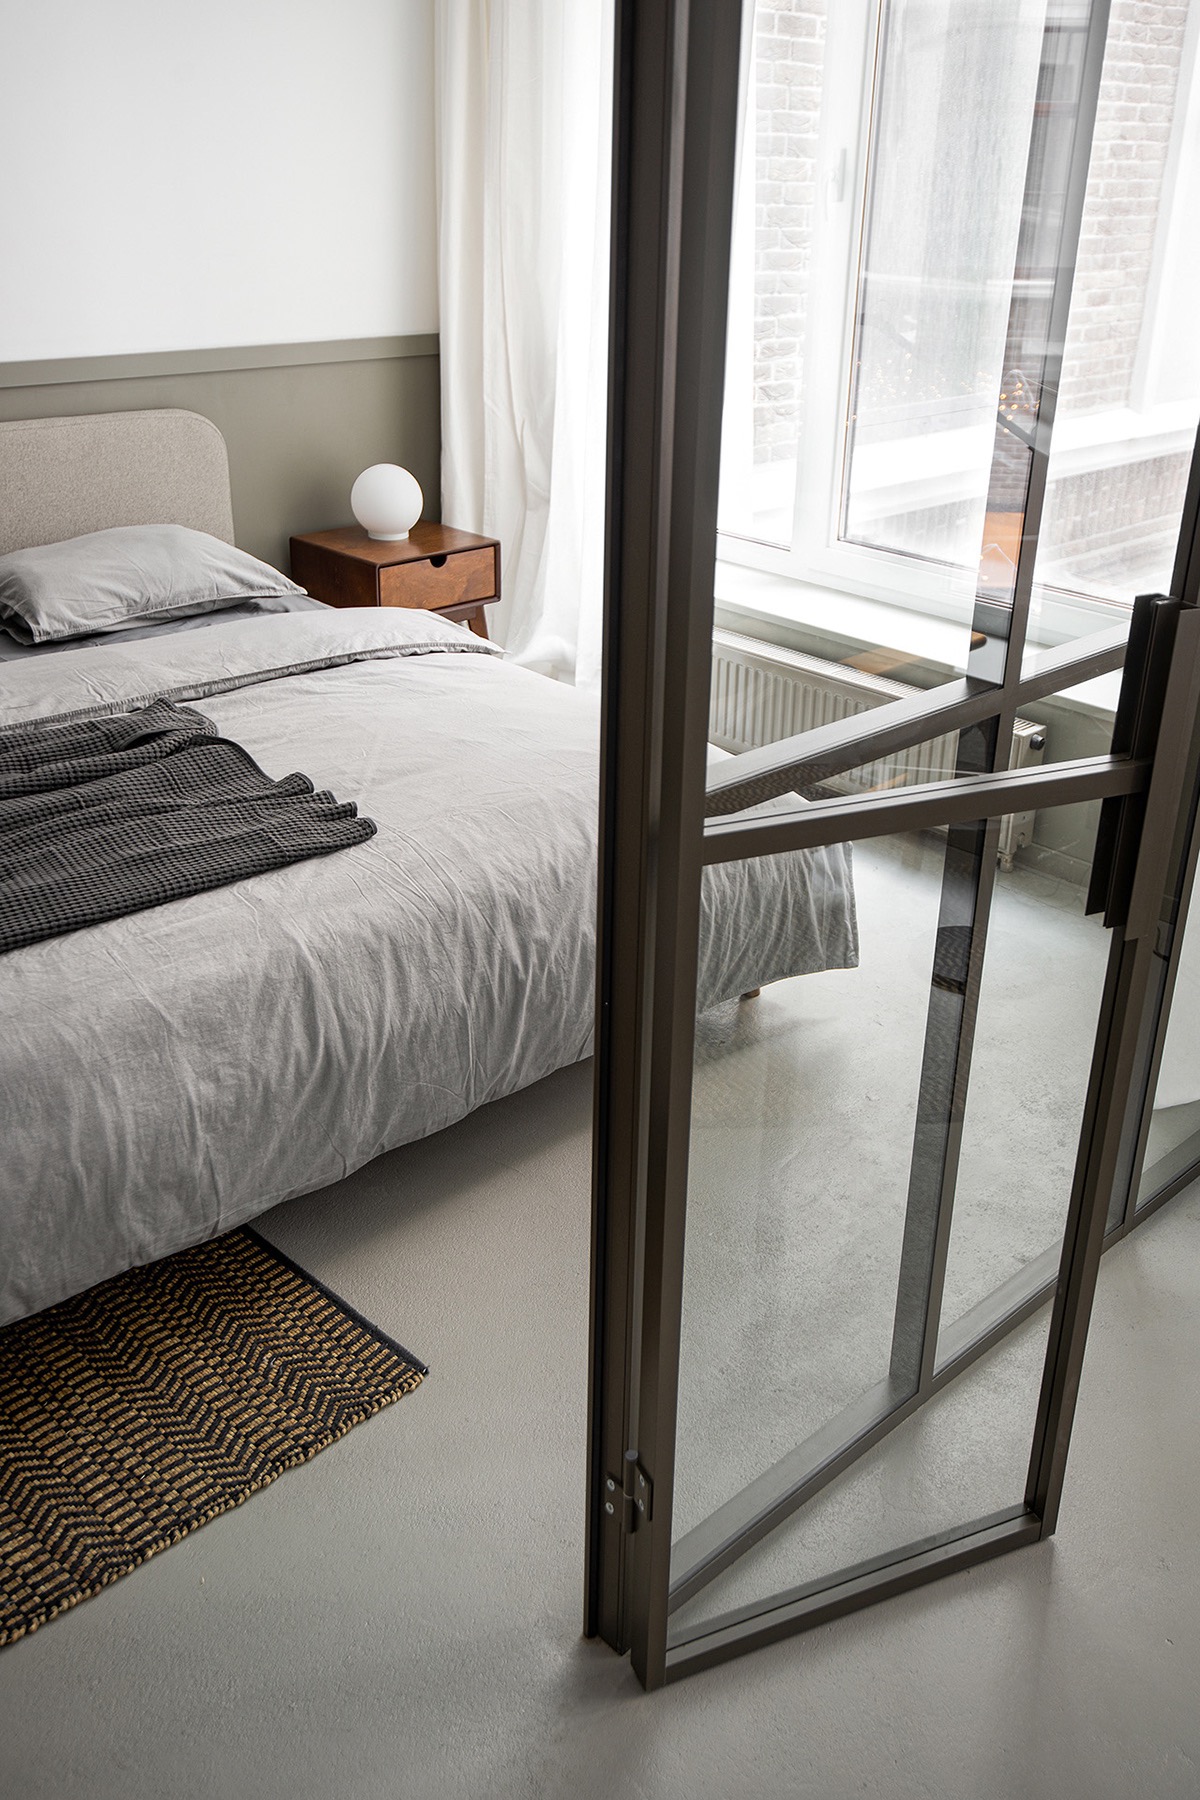 Tường kính không chỉ giúp đón sáng tự nhiên cho phòng ngủ mà còn tạo cảm giác rộng rãi hơn về mặt thị giác, giúp người dùng thư giãn, thoải mái nhất có thể.